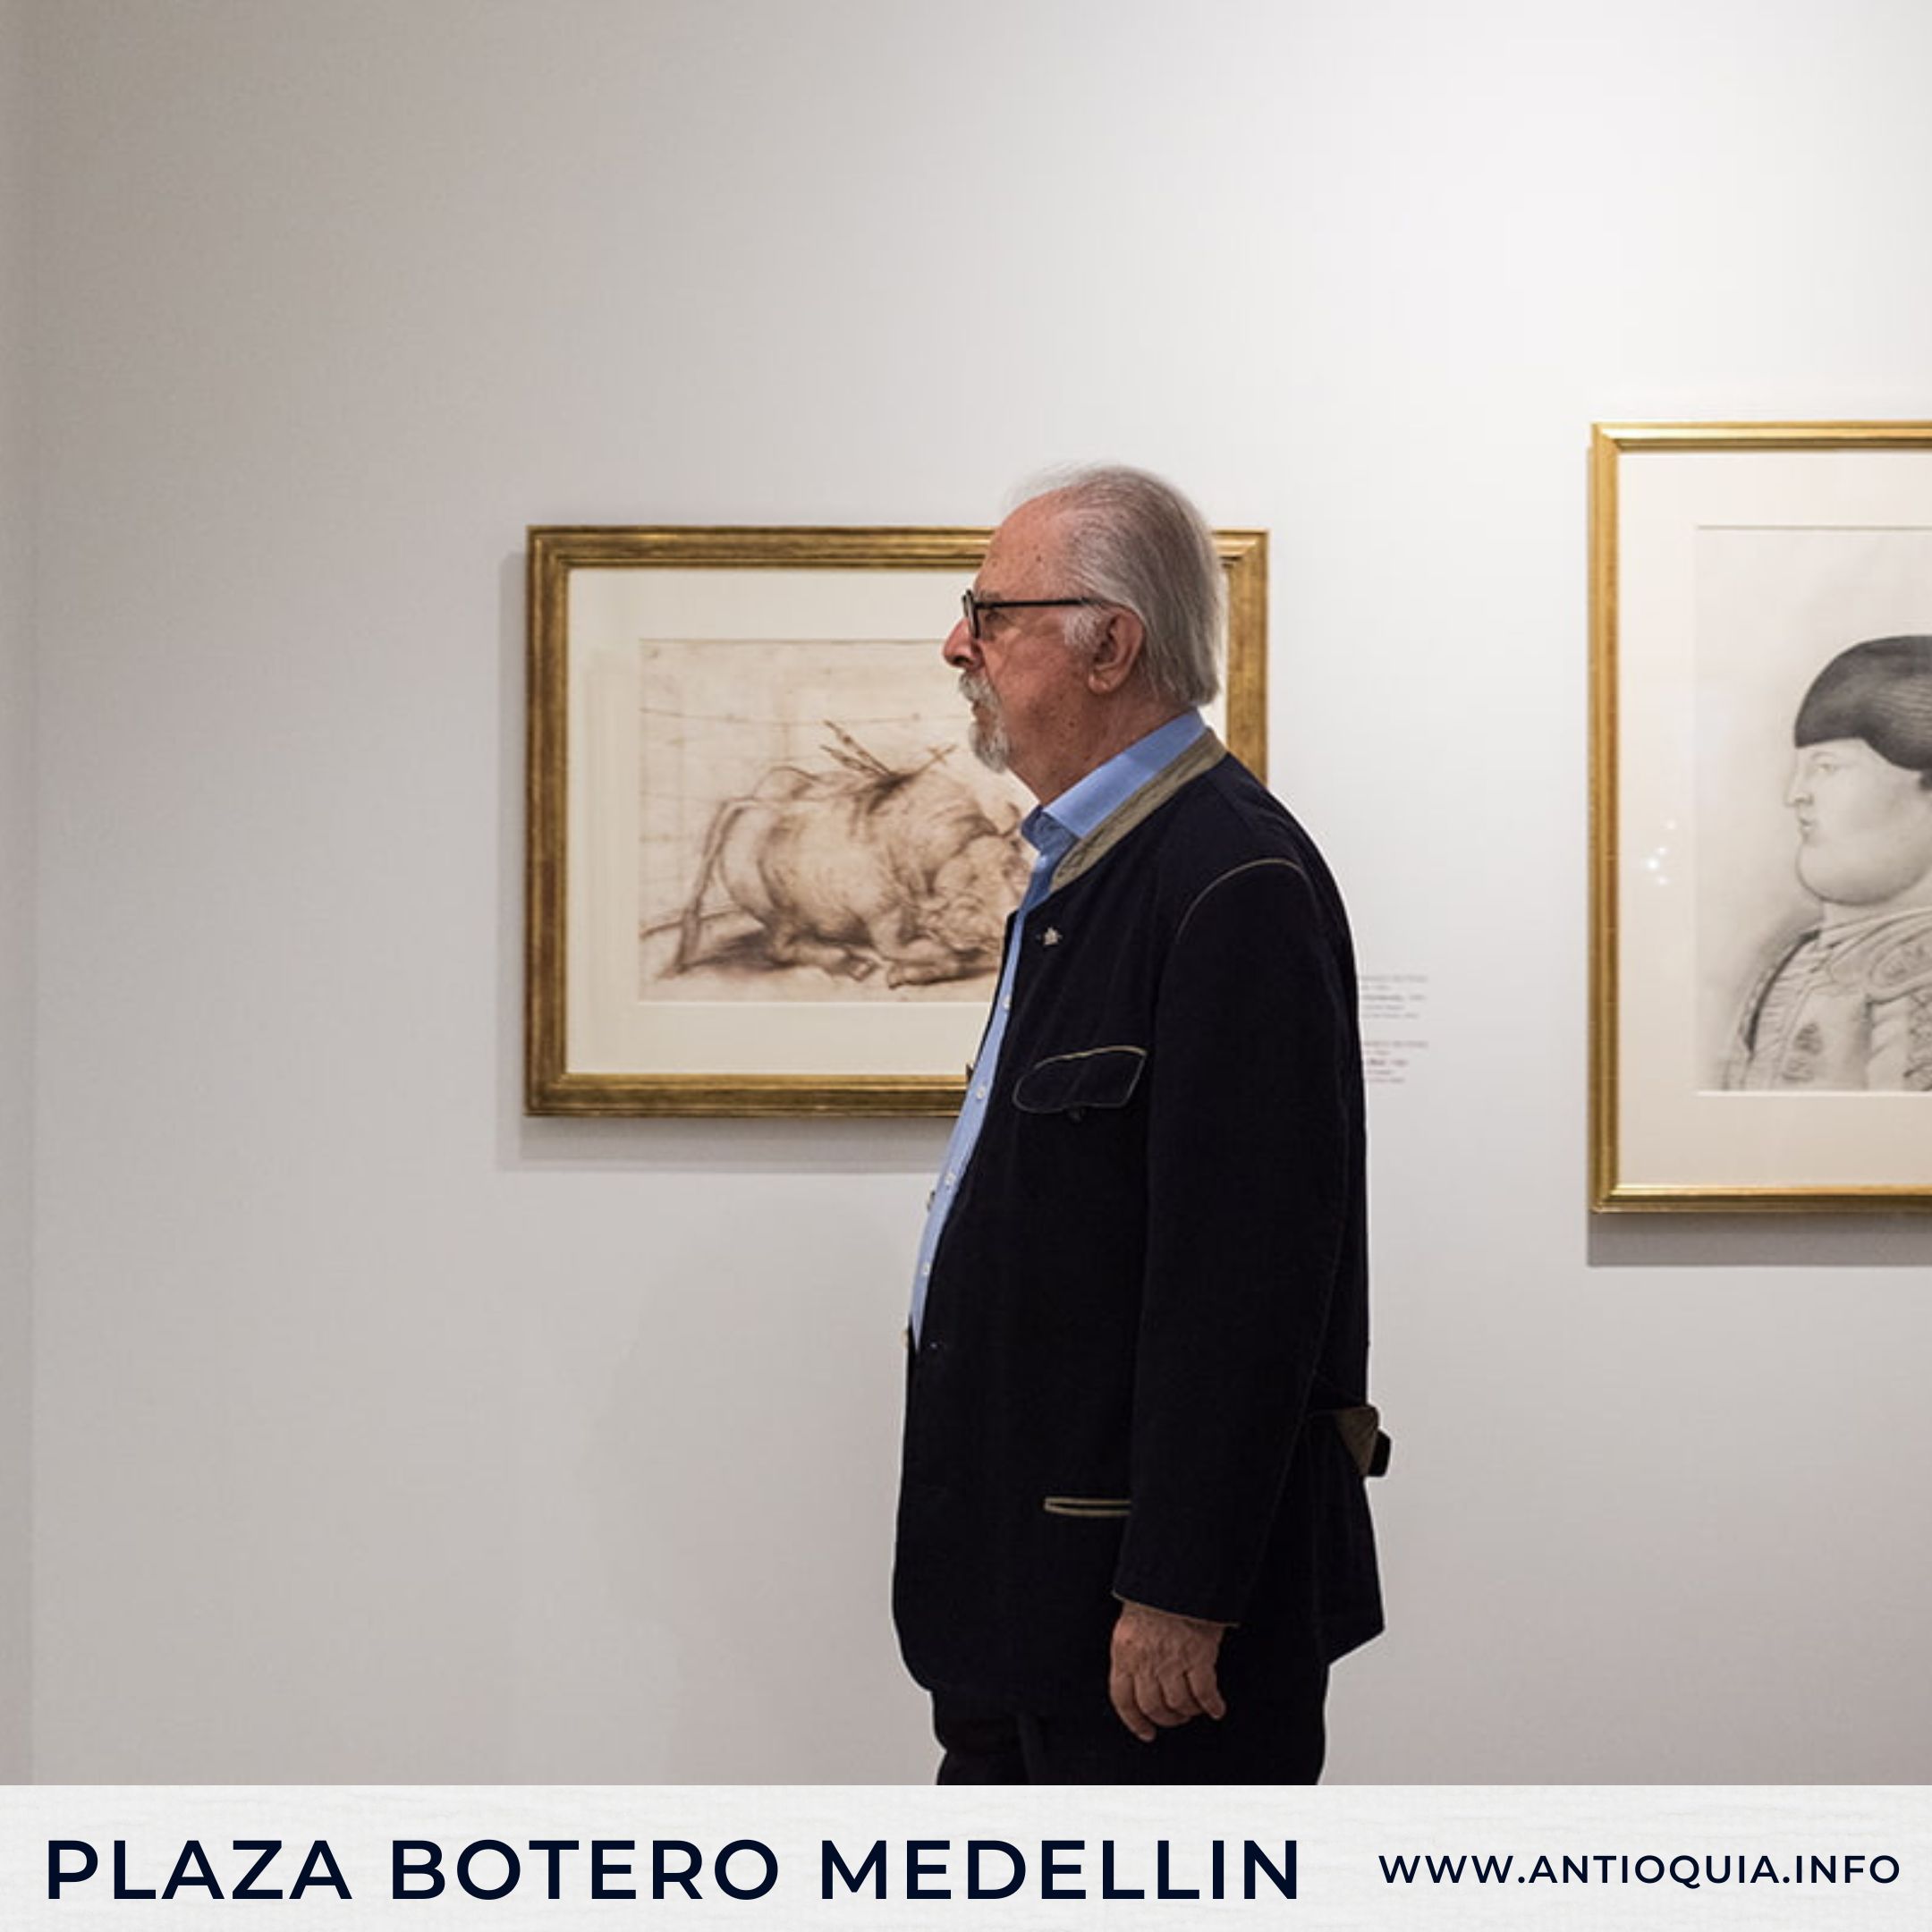 Fernando Botero y la Plaza Botero: Un legado artístico en Medellín